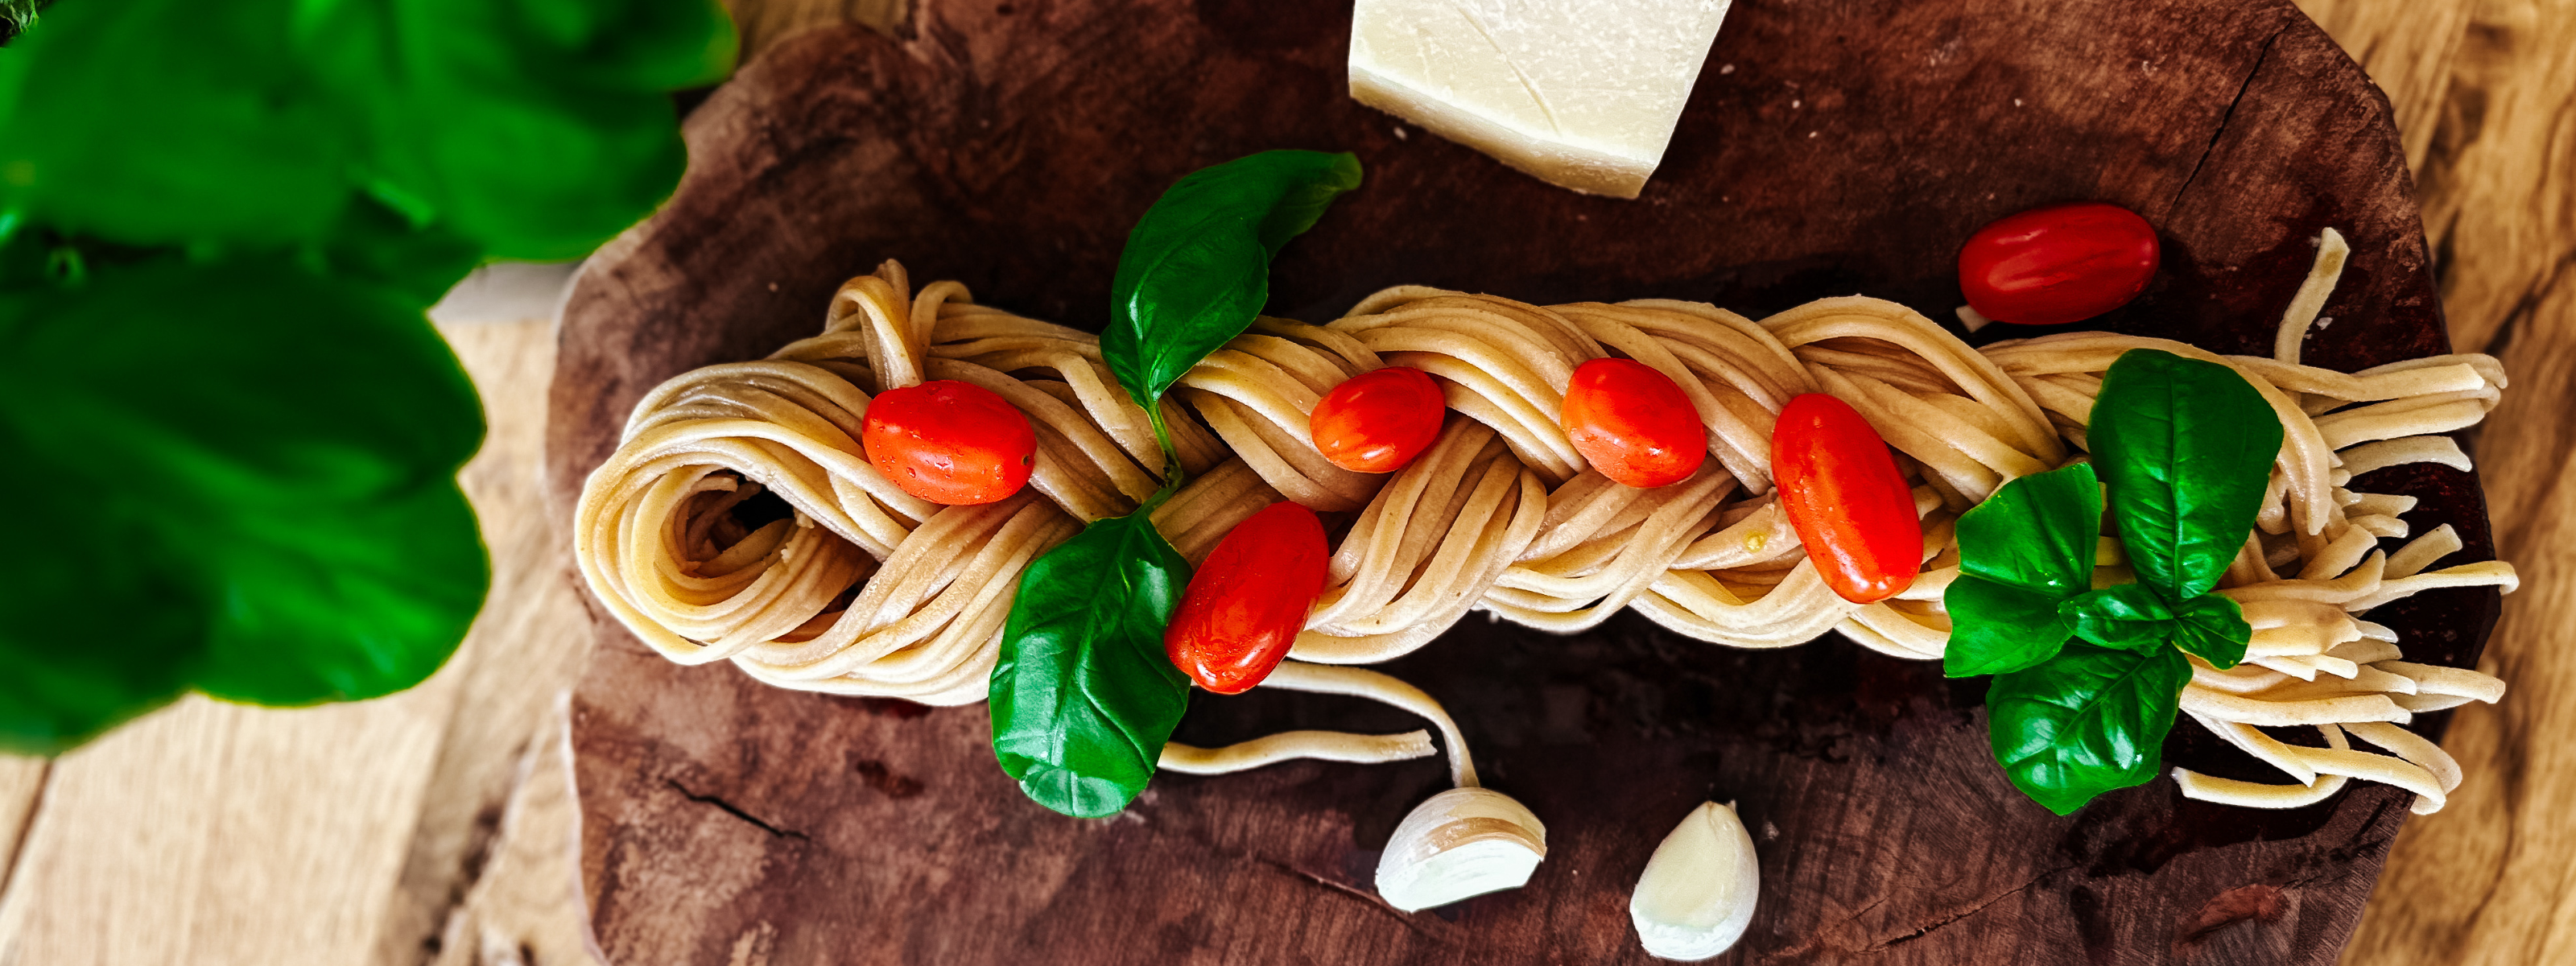 Spaghetti Zopf mit Tomatini aglio olio: Ein leichtes und köstliches vegetarisches Gericht